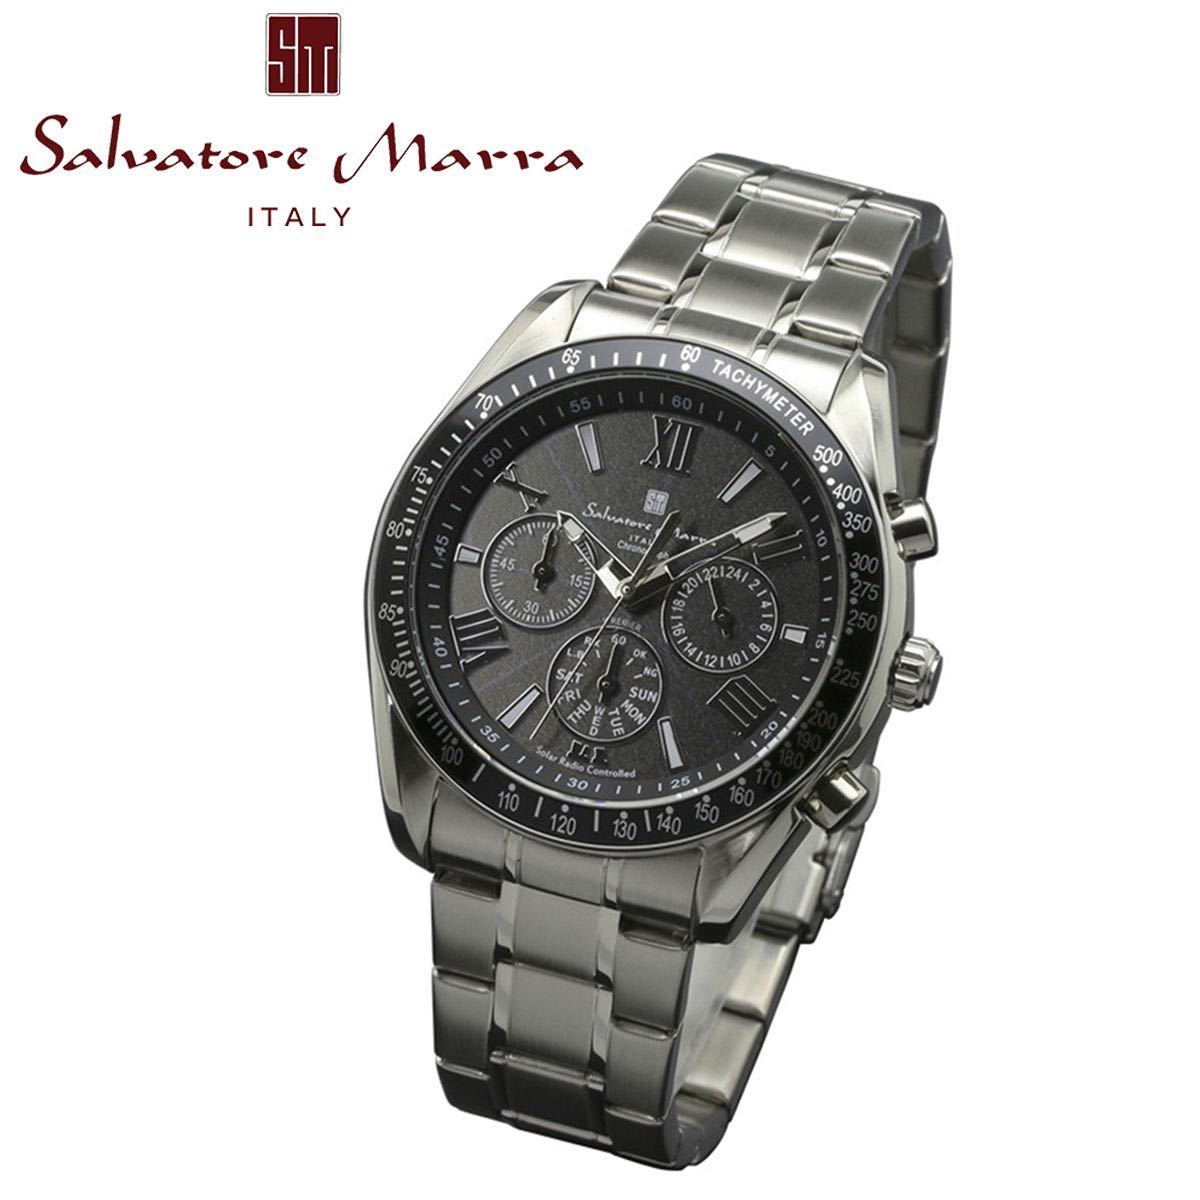 Salvatore Marra サルバトーレマーラ SM15116-SSBKSV ブラック シルバー 電波 ソーラー クロノグラフ メンズ 腕時計 ステンレス ビジネス